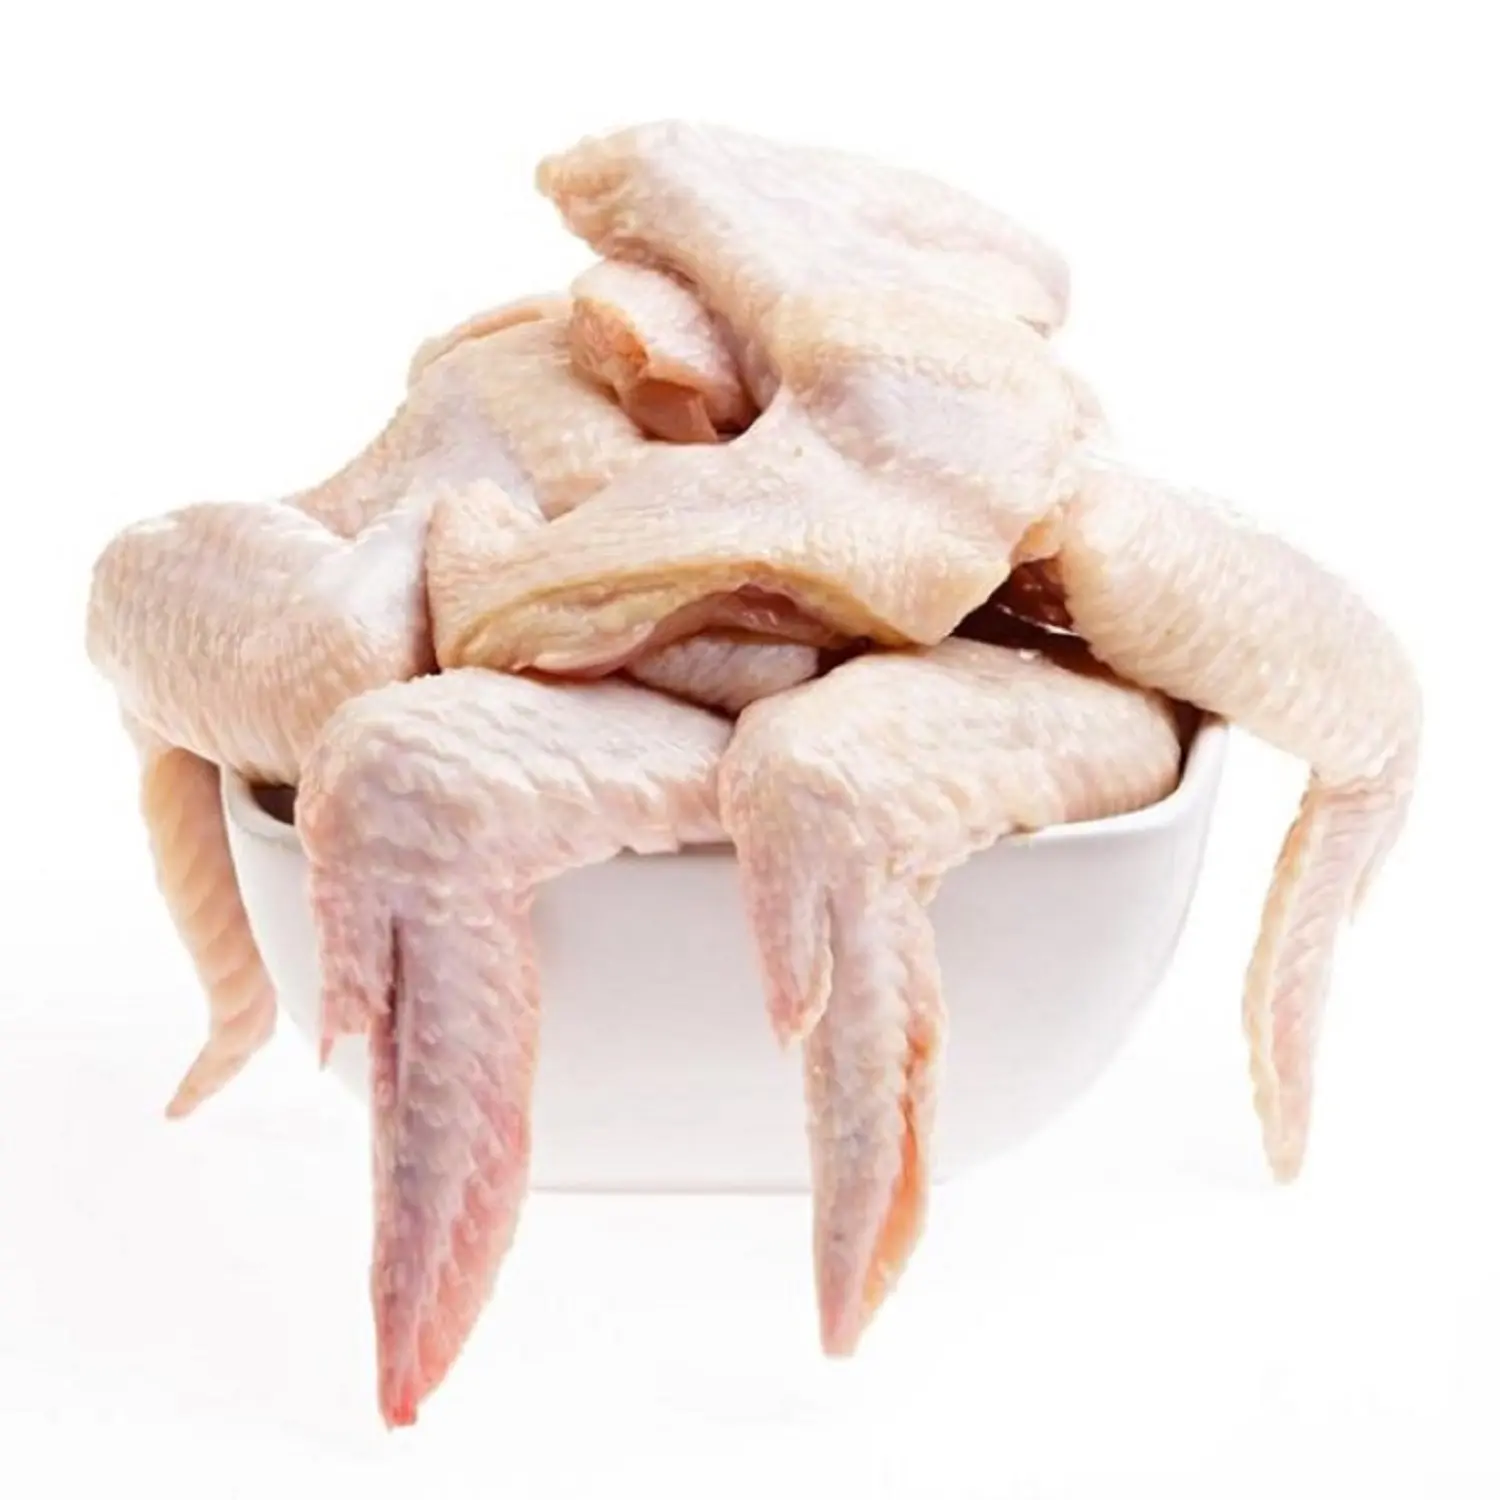 Alas de articulación media de pollo congelado/3 Alas de pollo articuladas, ala de pollo 2 articulaciones/punta de ala de pollo congelado